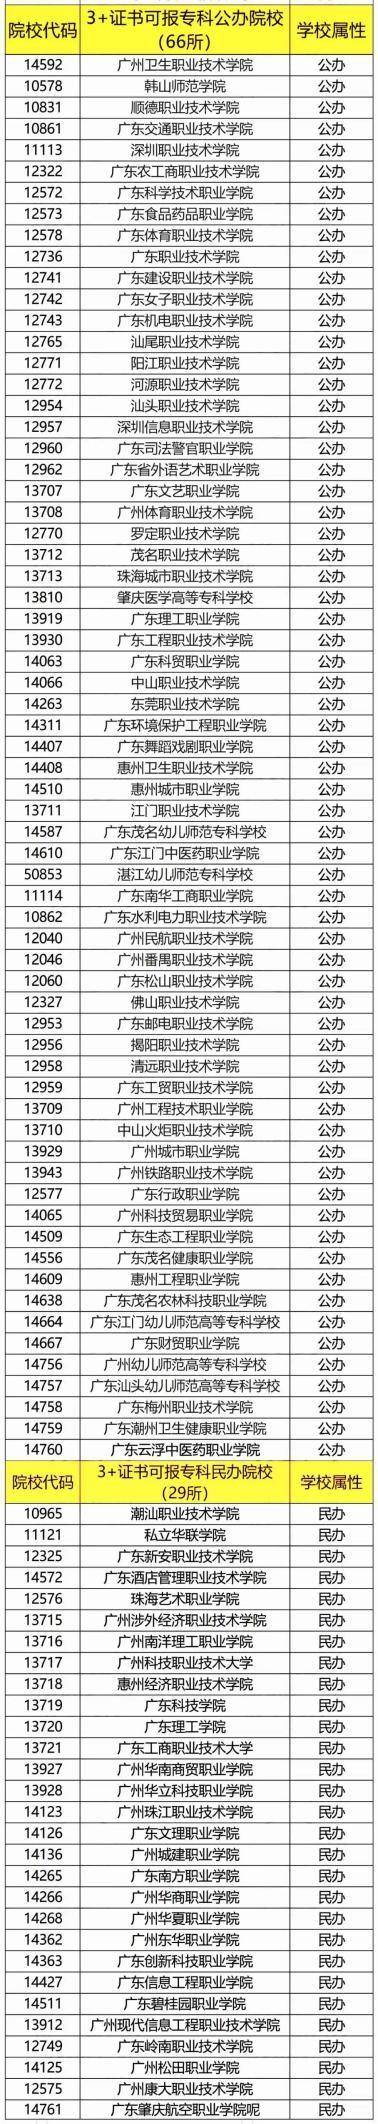 广东”野鸡大学“名单（附：广东3+证书高职高考可报考本、专科高校名单）-1